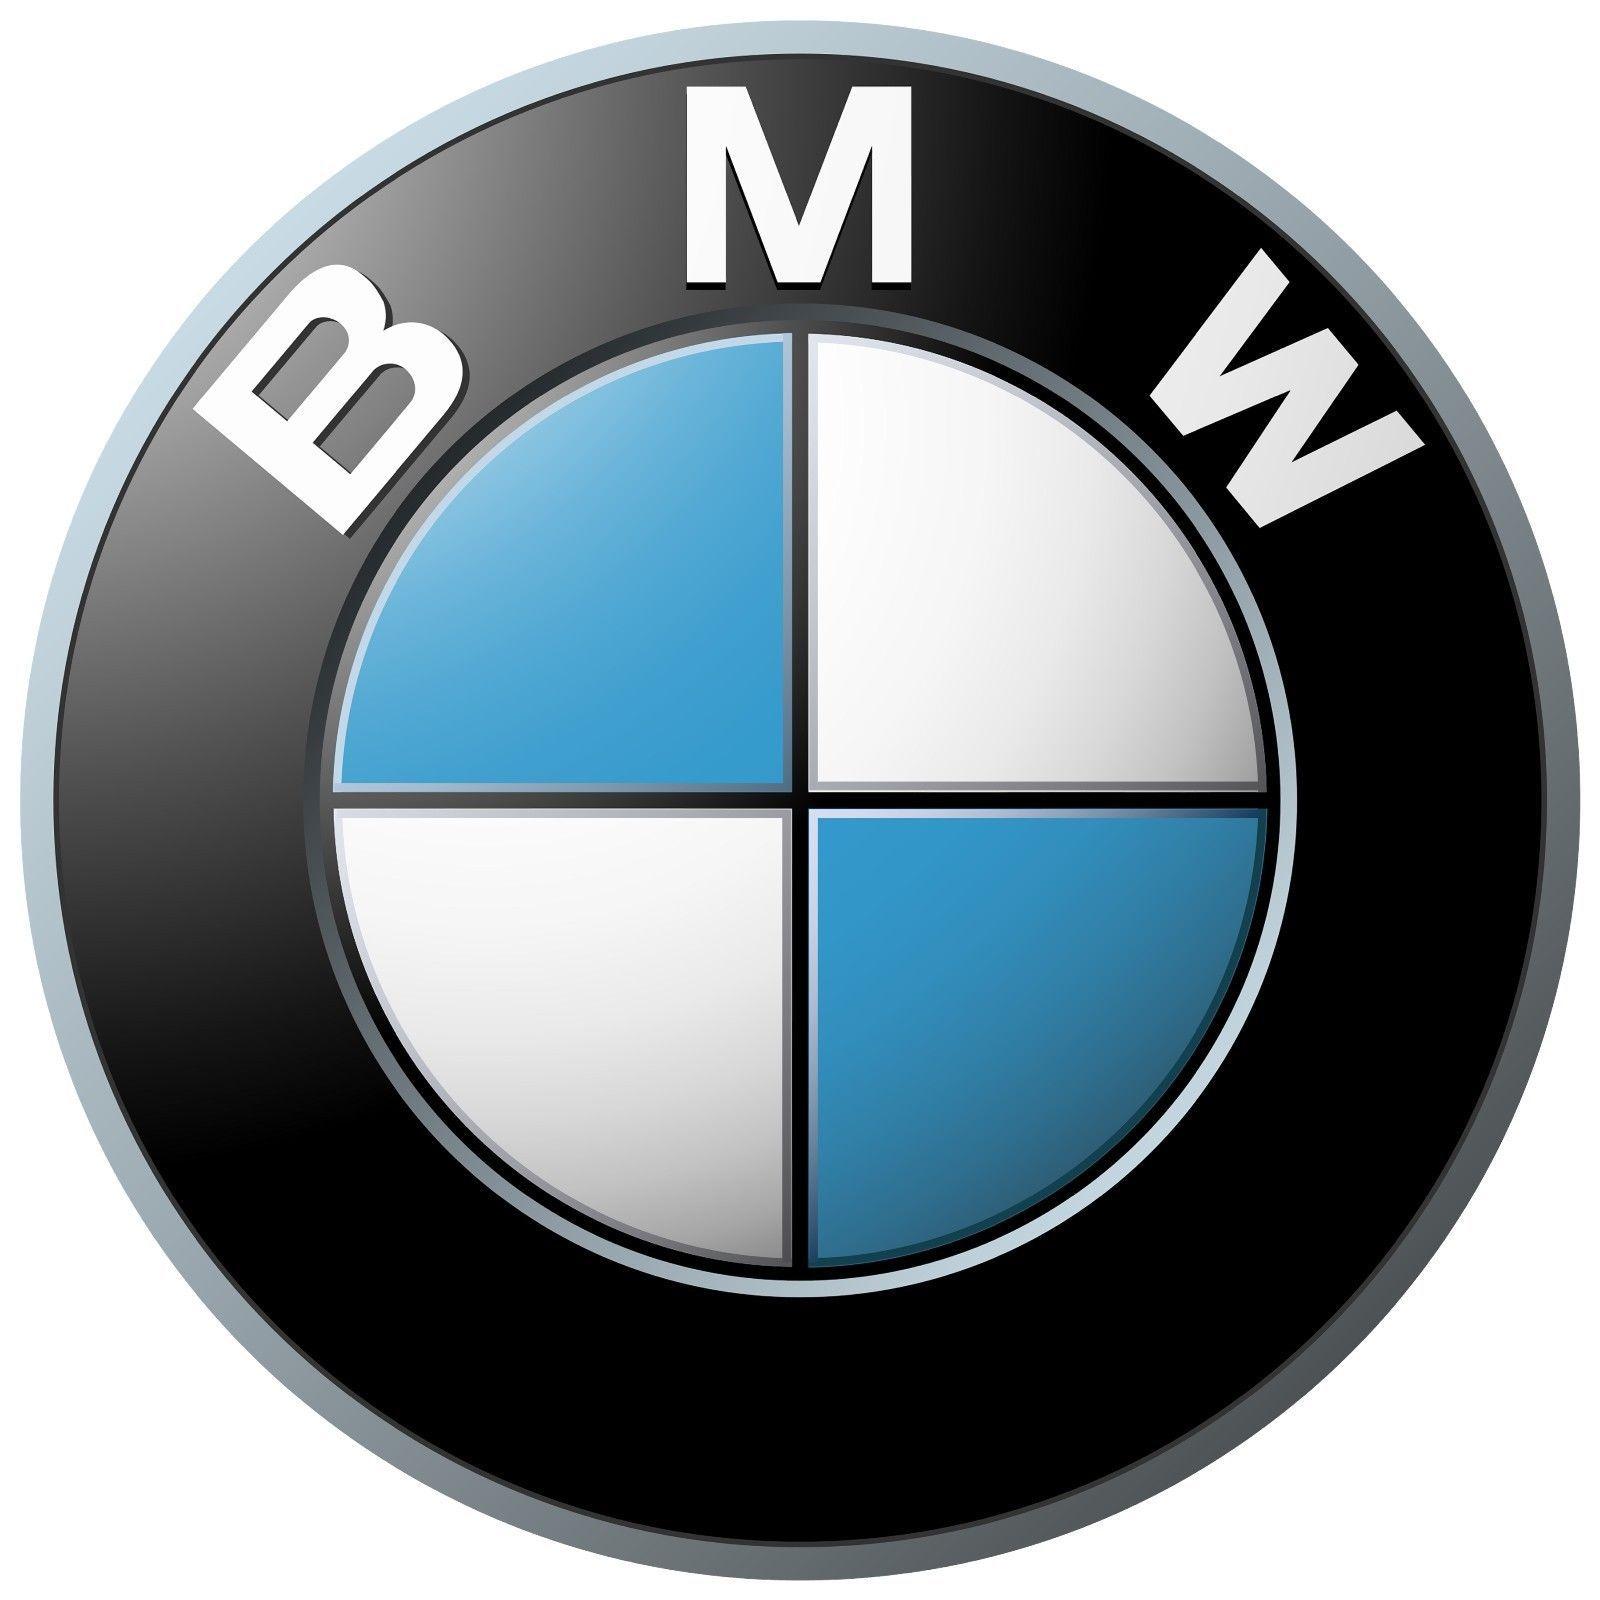 Awesome BMW Logo - Awesome BMW Emblem Logo Decal Sticker Car Window Laptop Wall 2018